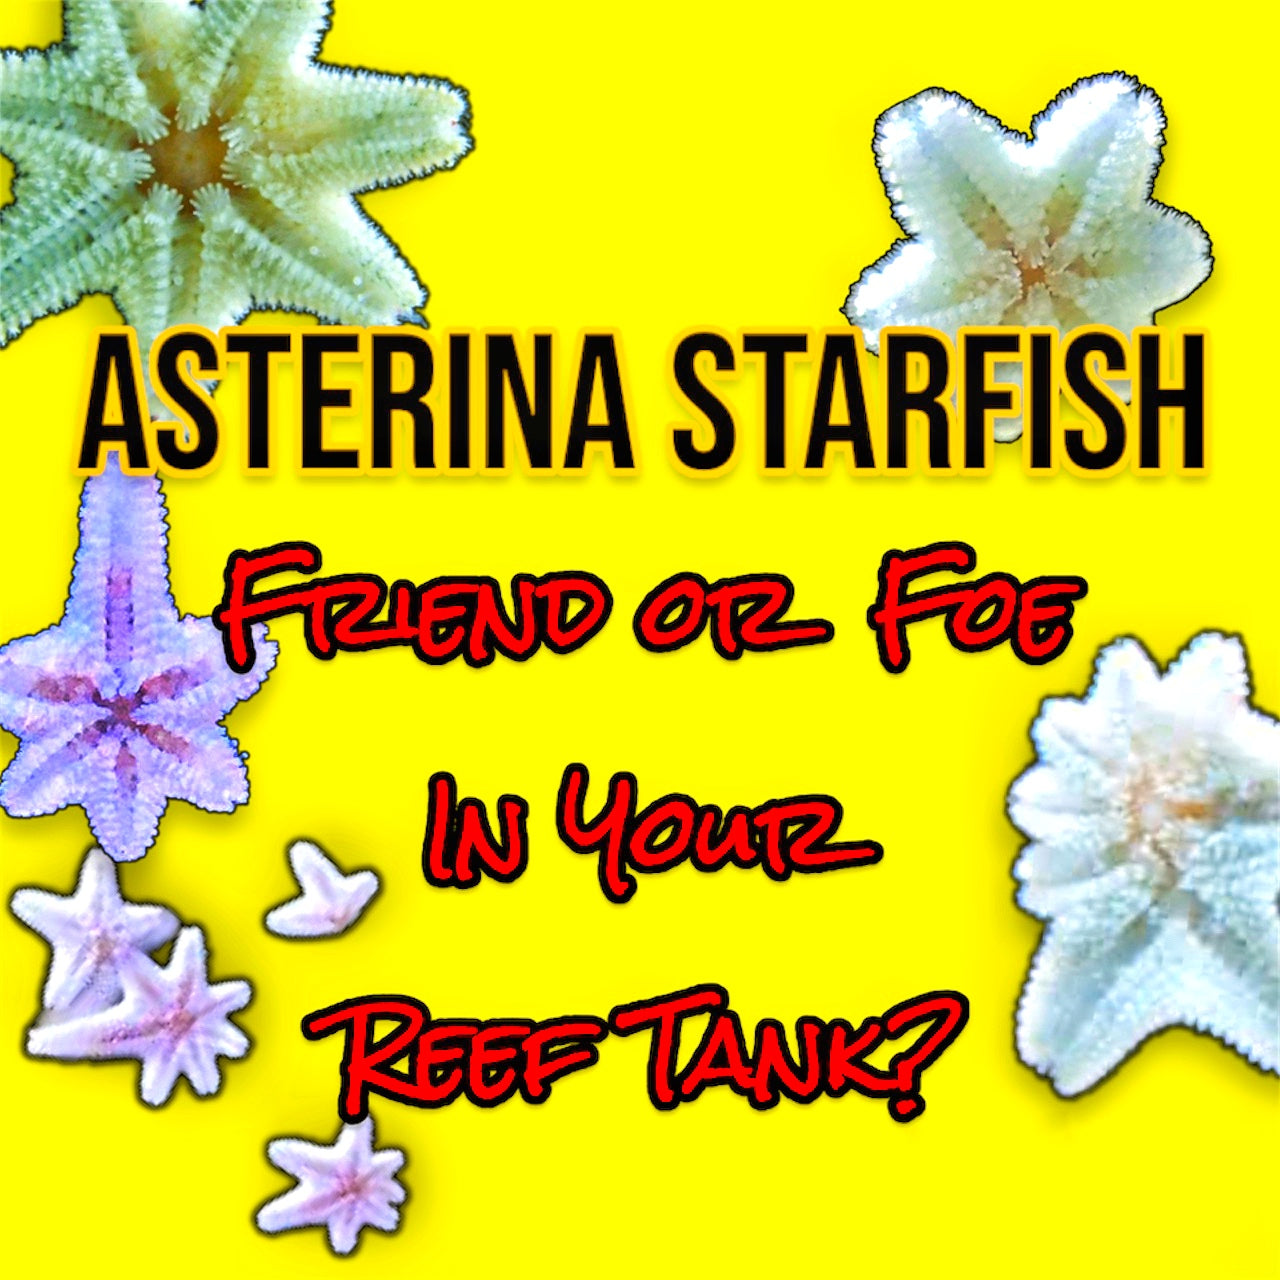 Asterina starfish in a reef tank